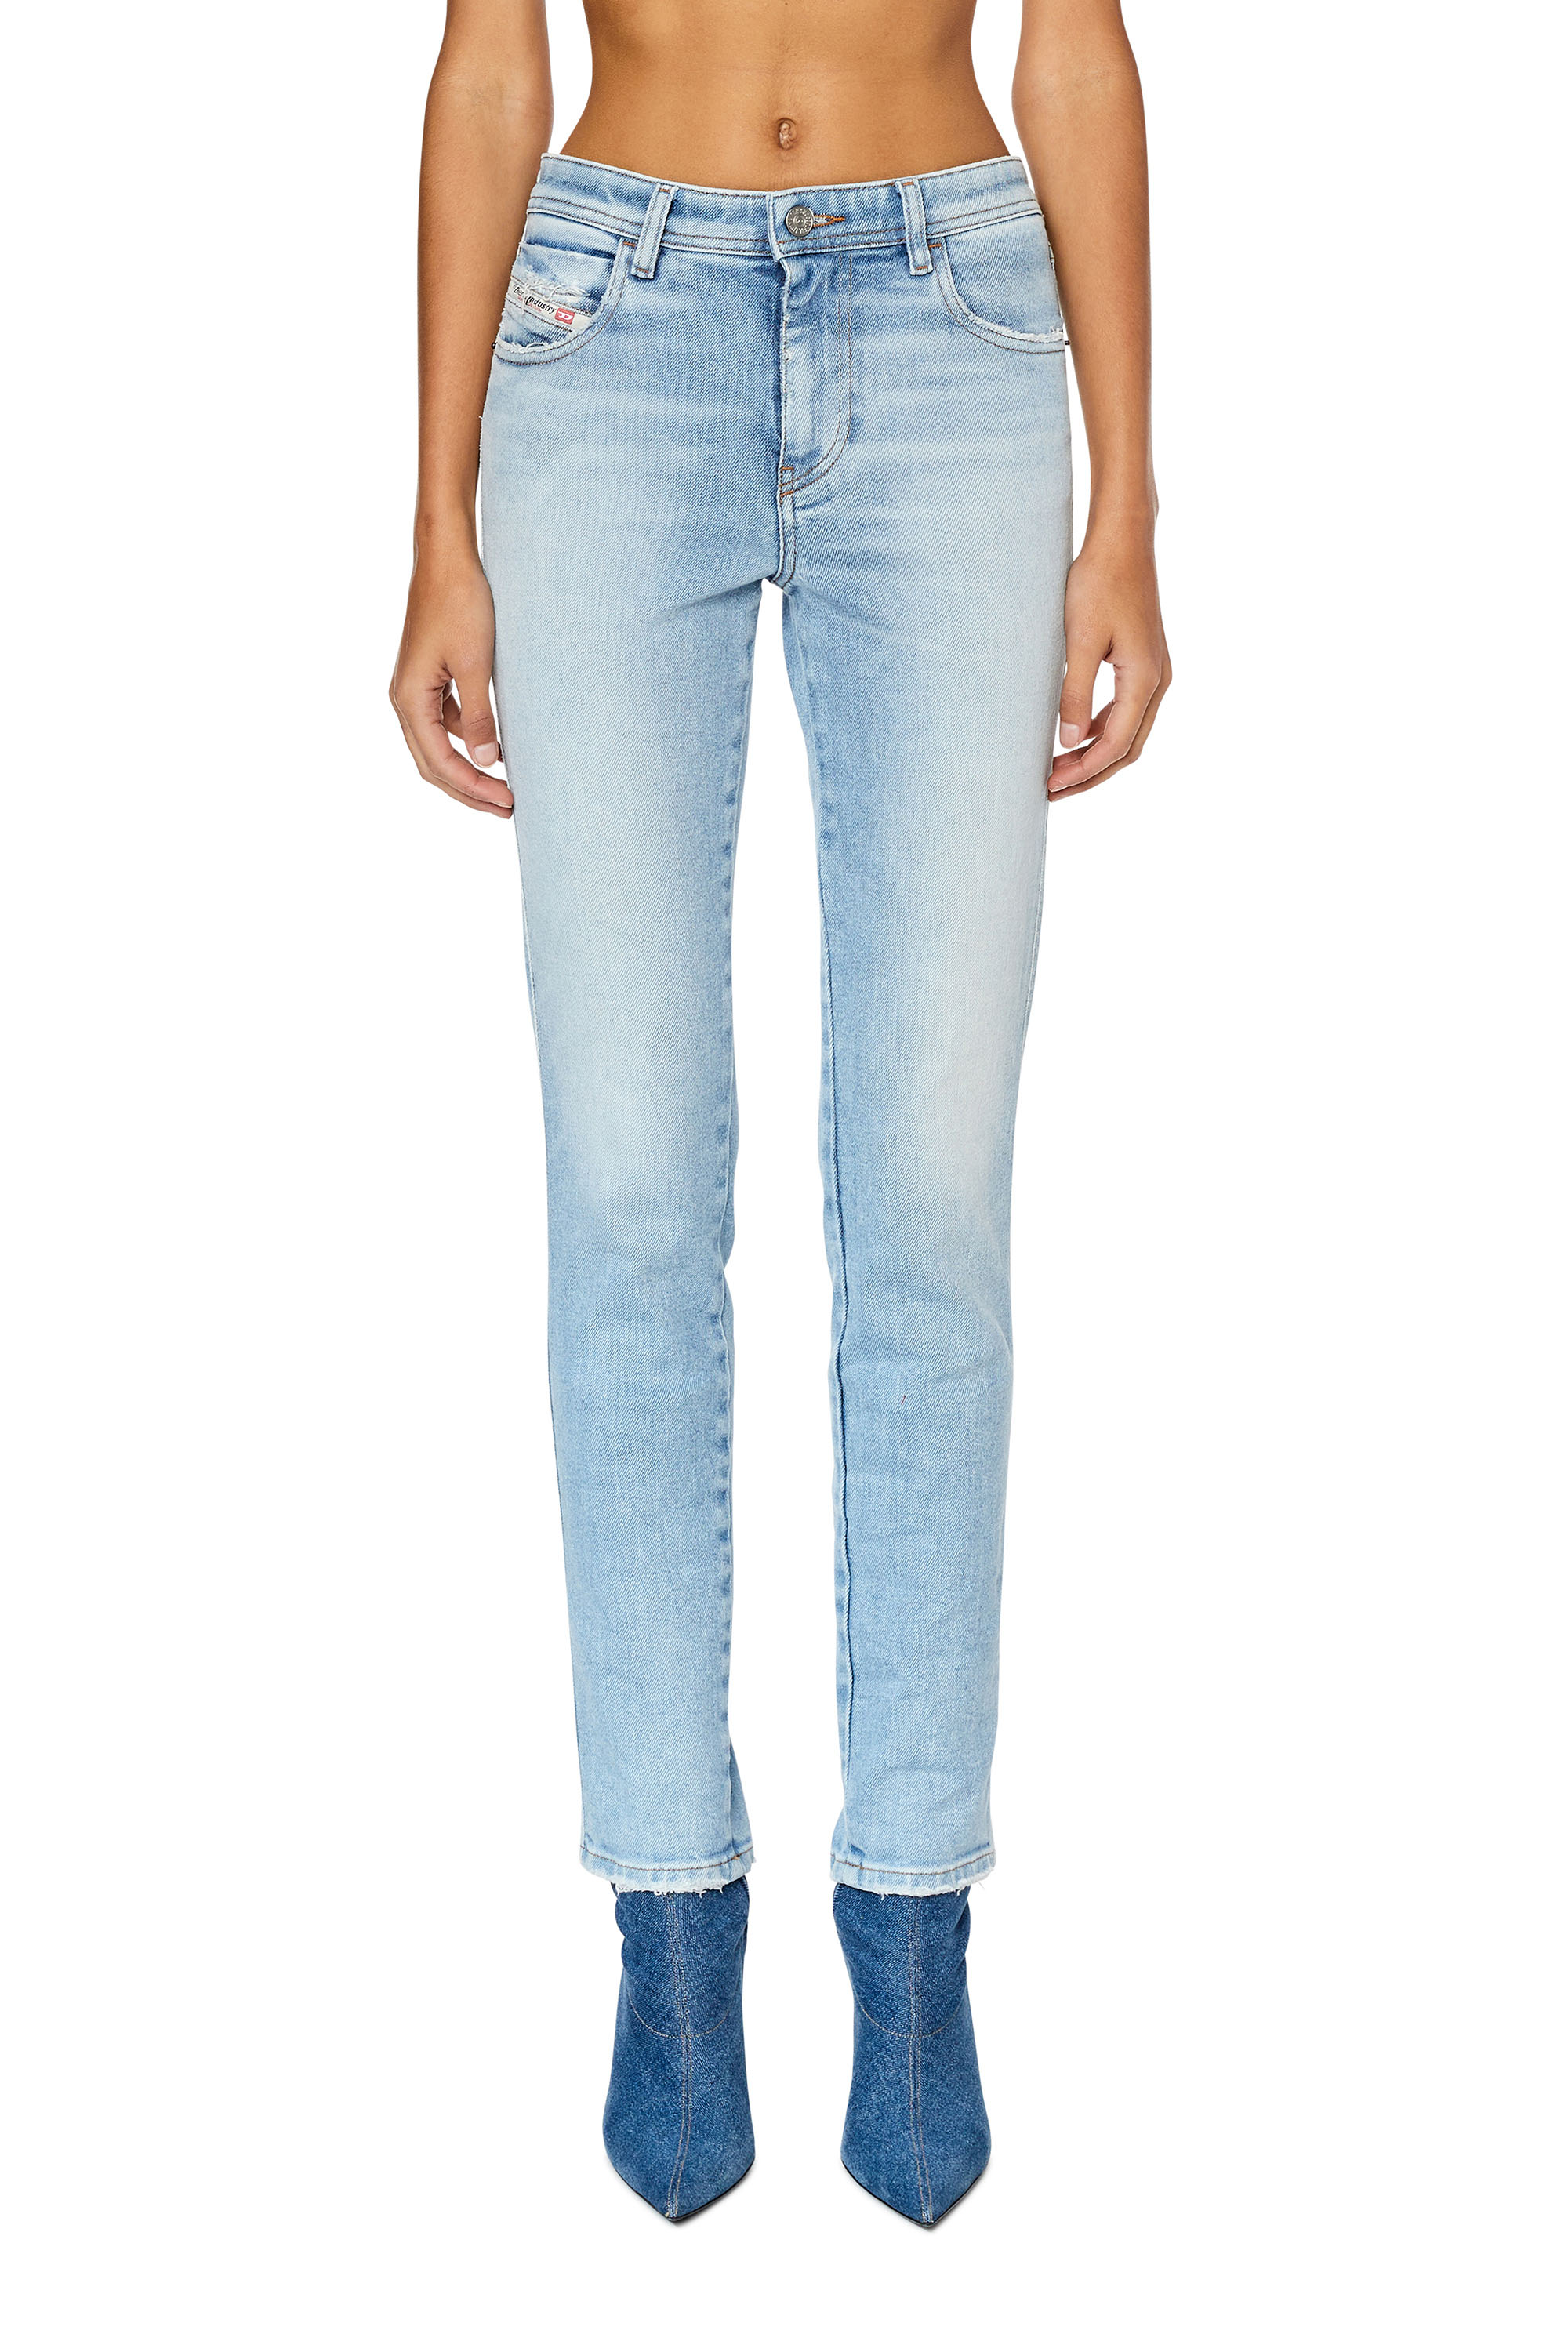 Diesel - Skinny Jeans 2015 Babhila 09E90,  - Image 3